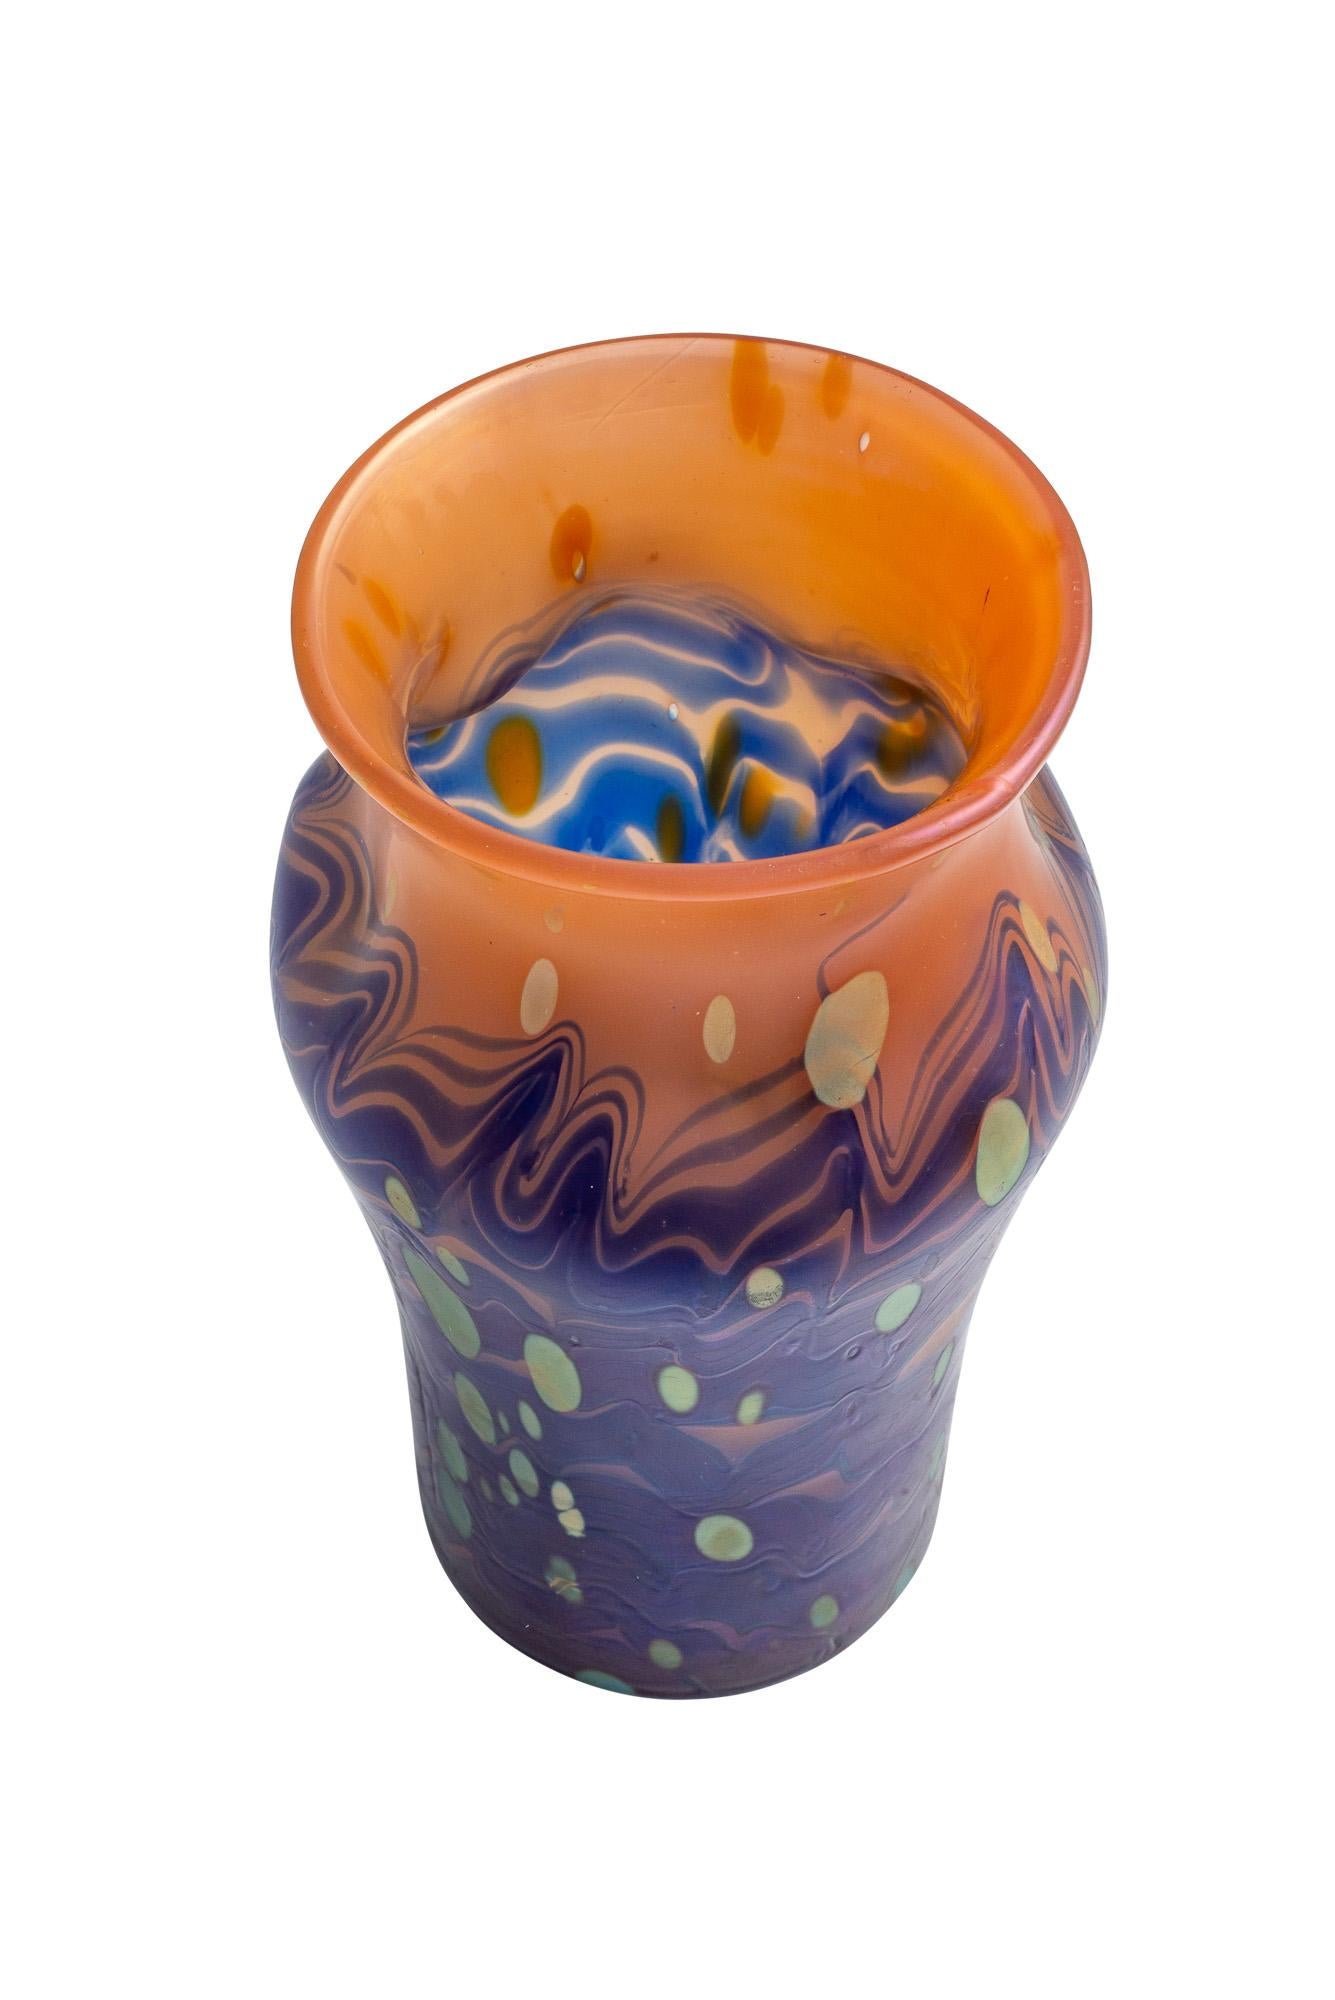 Austrian Jugendstil Glass Vase Loetz Blue Orange Gold circa 1901 In Good Condition In Klosterneuburg, AT